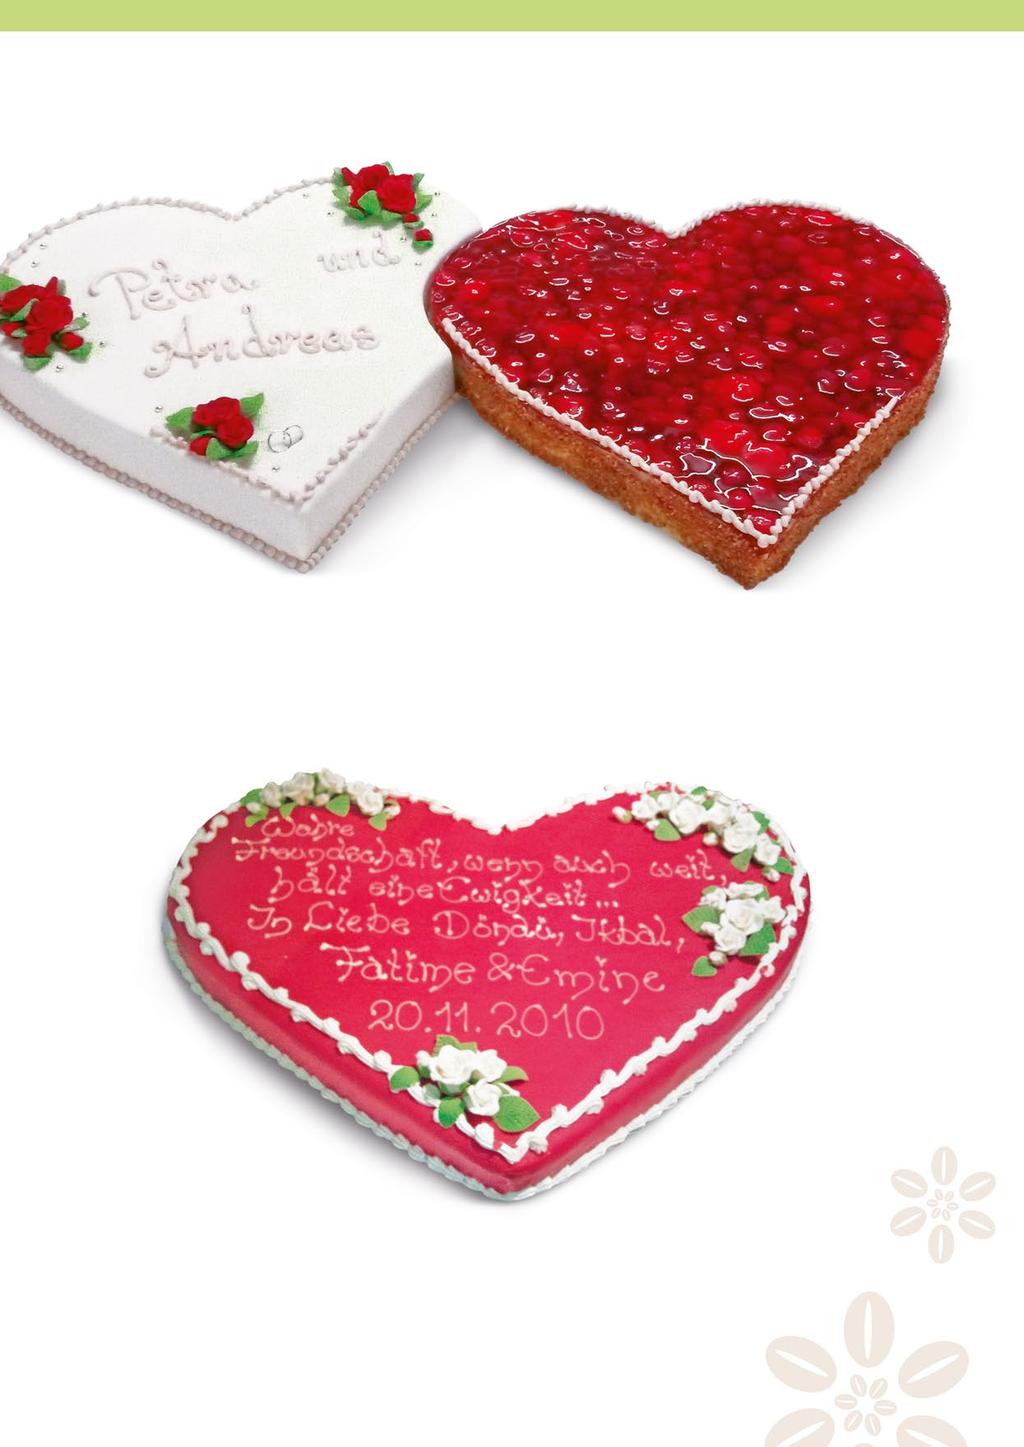 Freya: Zwei Herzen, je ca. 40 x 60 cm, belegt mit frischen Erdbeeren und mit weißem Fondant, das mit Bouquets aus roten Zucker-Rosen sowie einem Schriftzug dekoriert ist (ergibt ca.